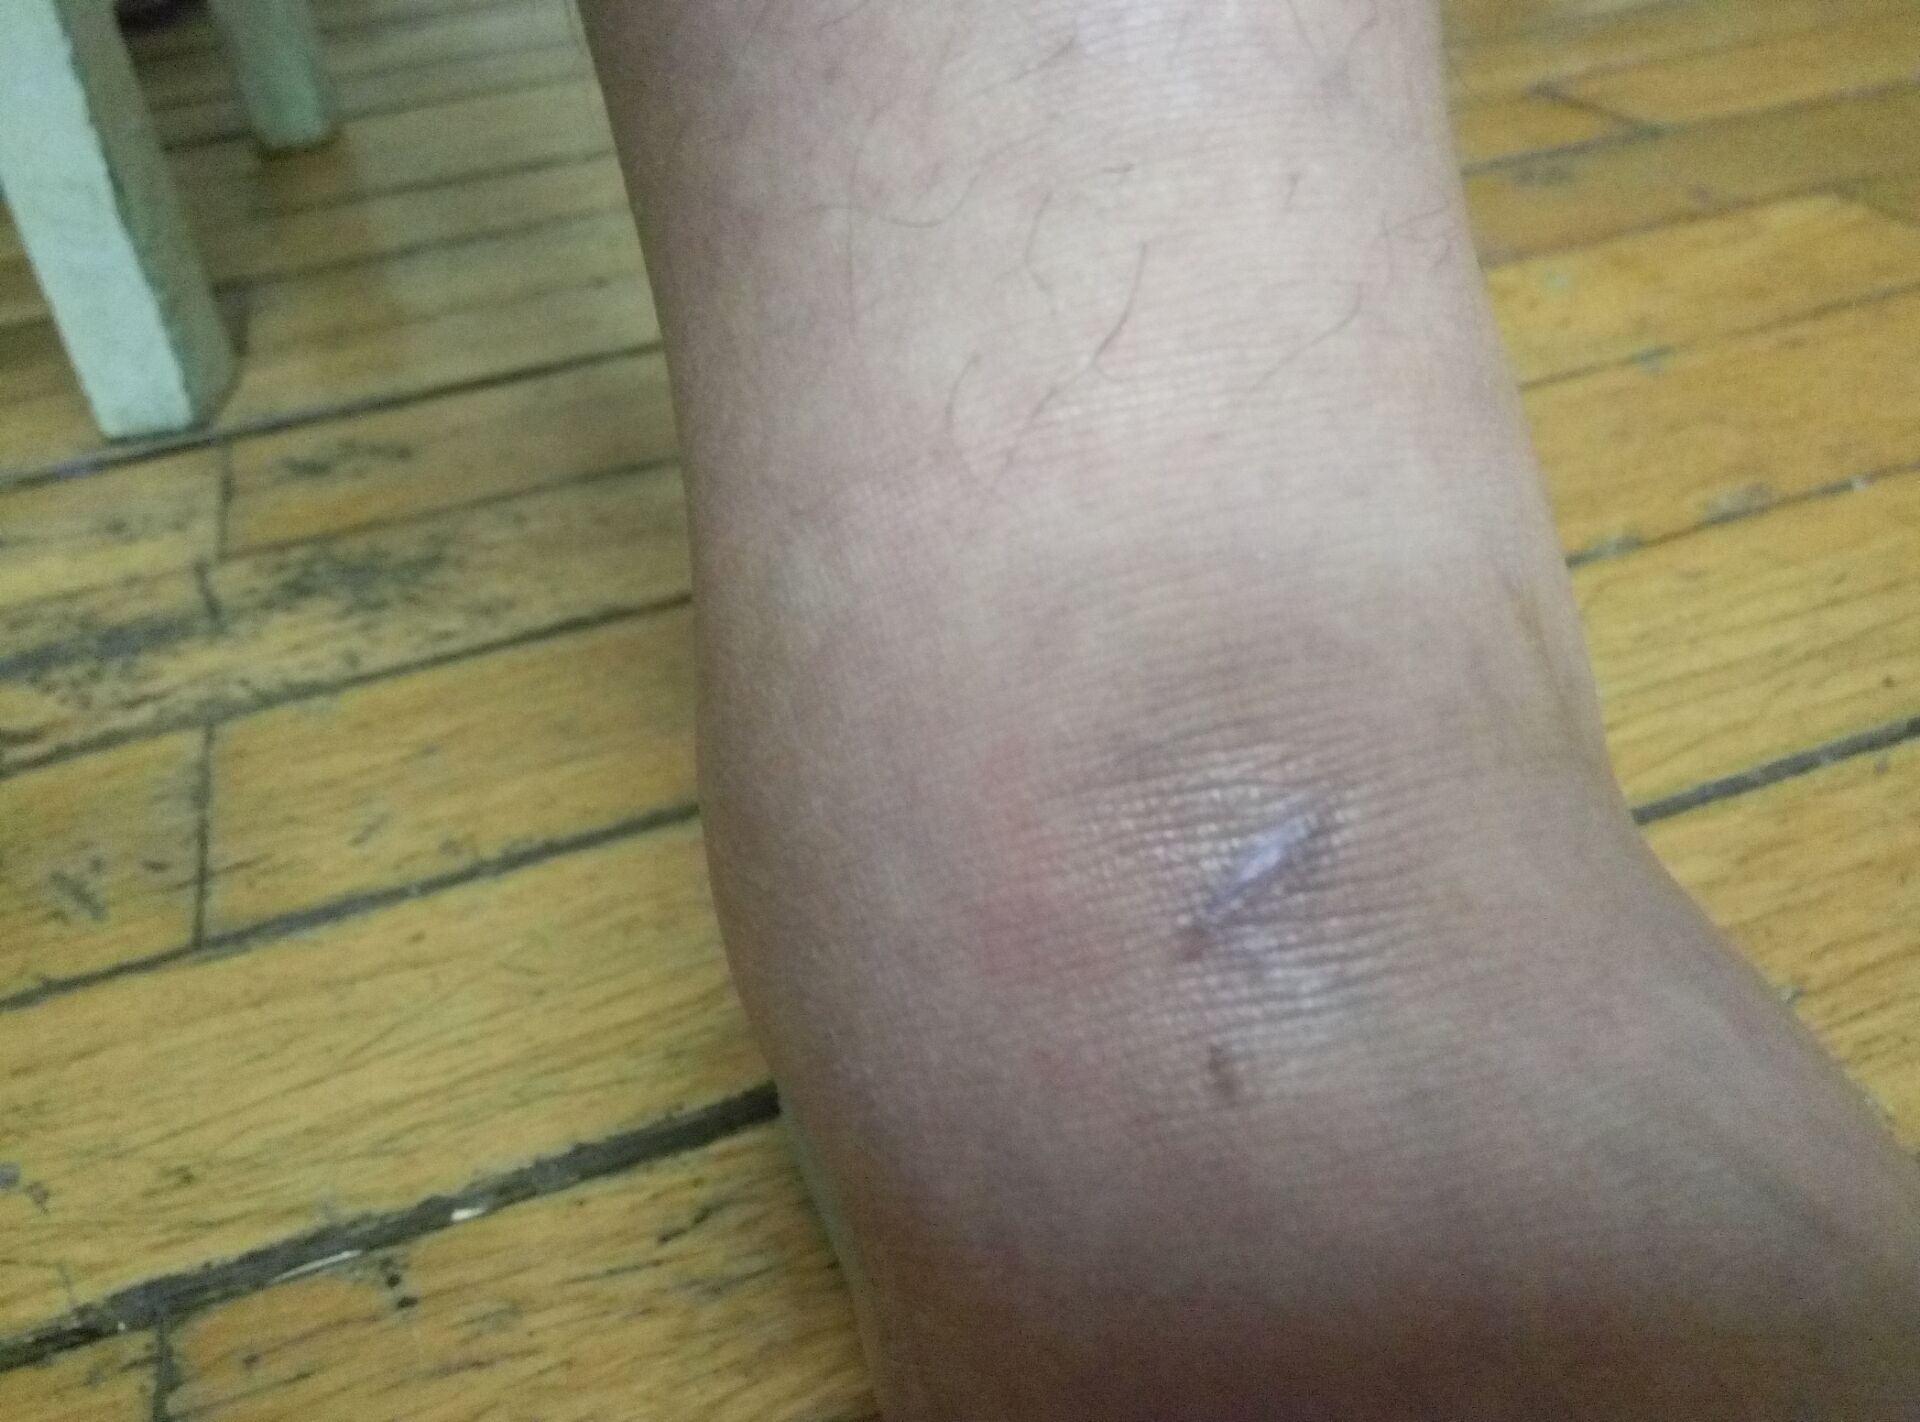 左脚脚踝割伤伤口已愈合近两个月最近几天发现伤口周围浮肿